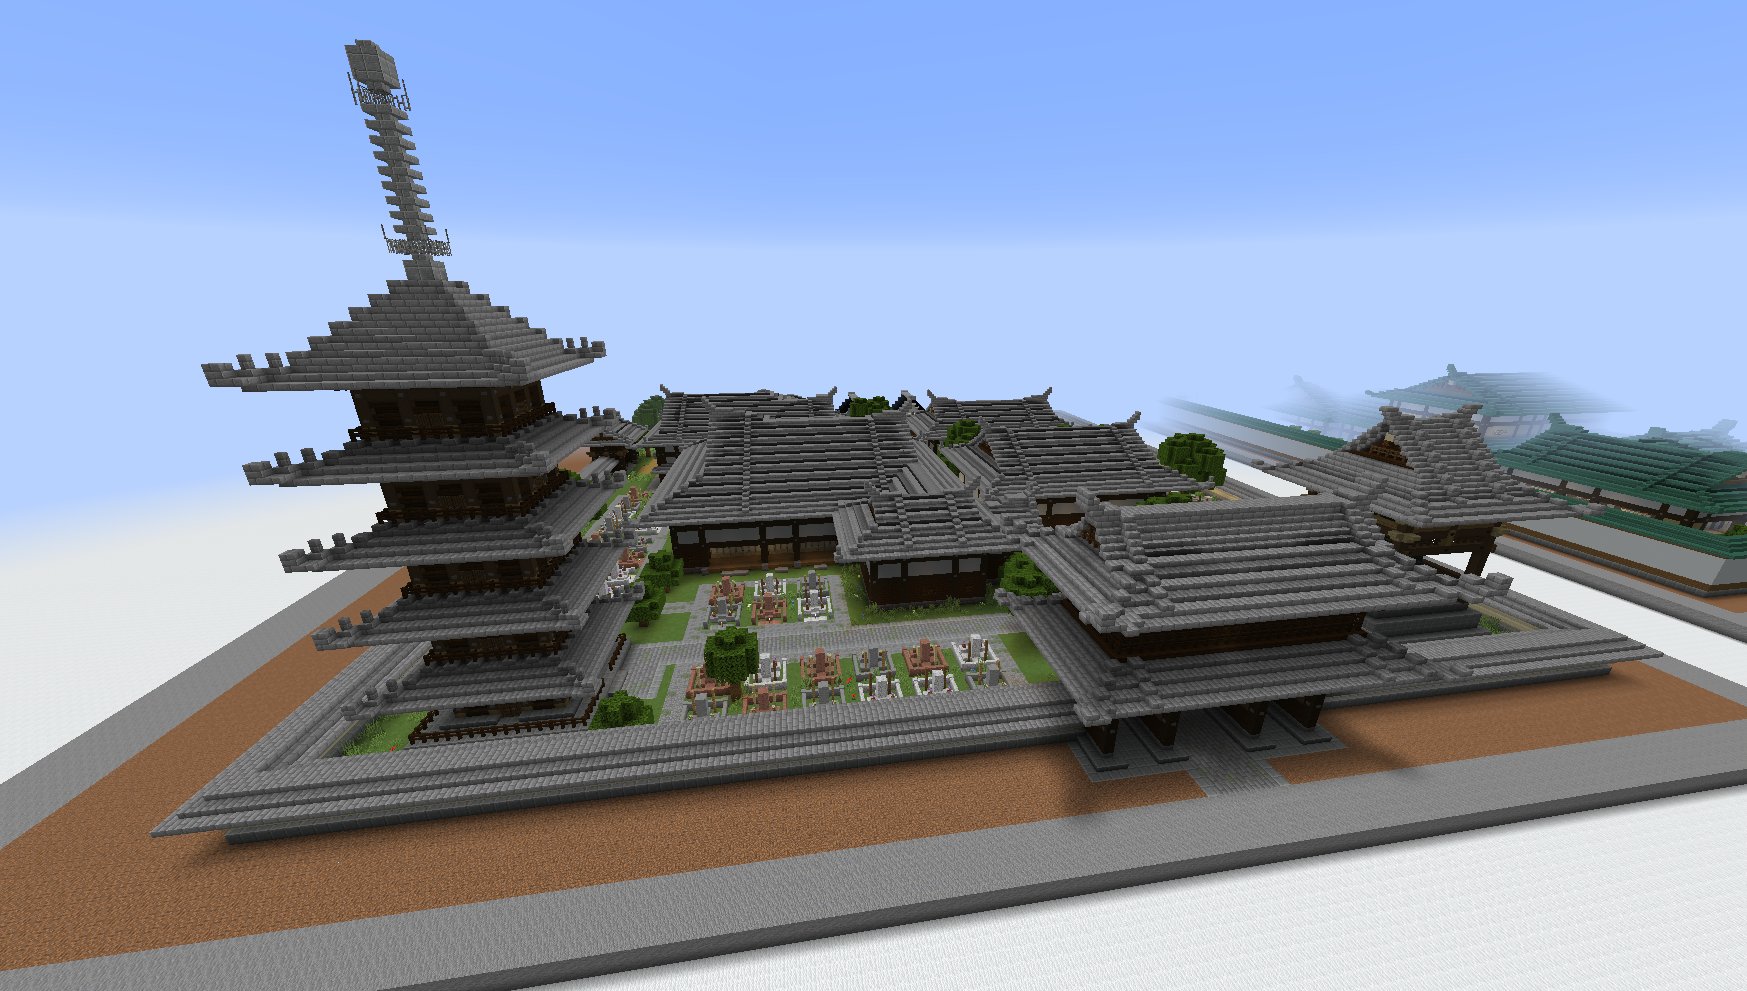 タツナミ シュウイチ ちょっと小ぶりだけどお寺が出来た Minecraft T Co 72nztx8095 Twitter